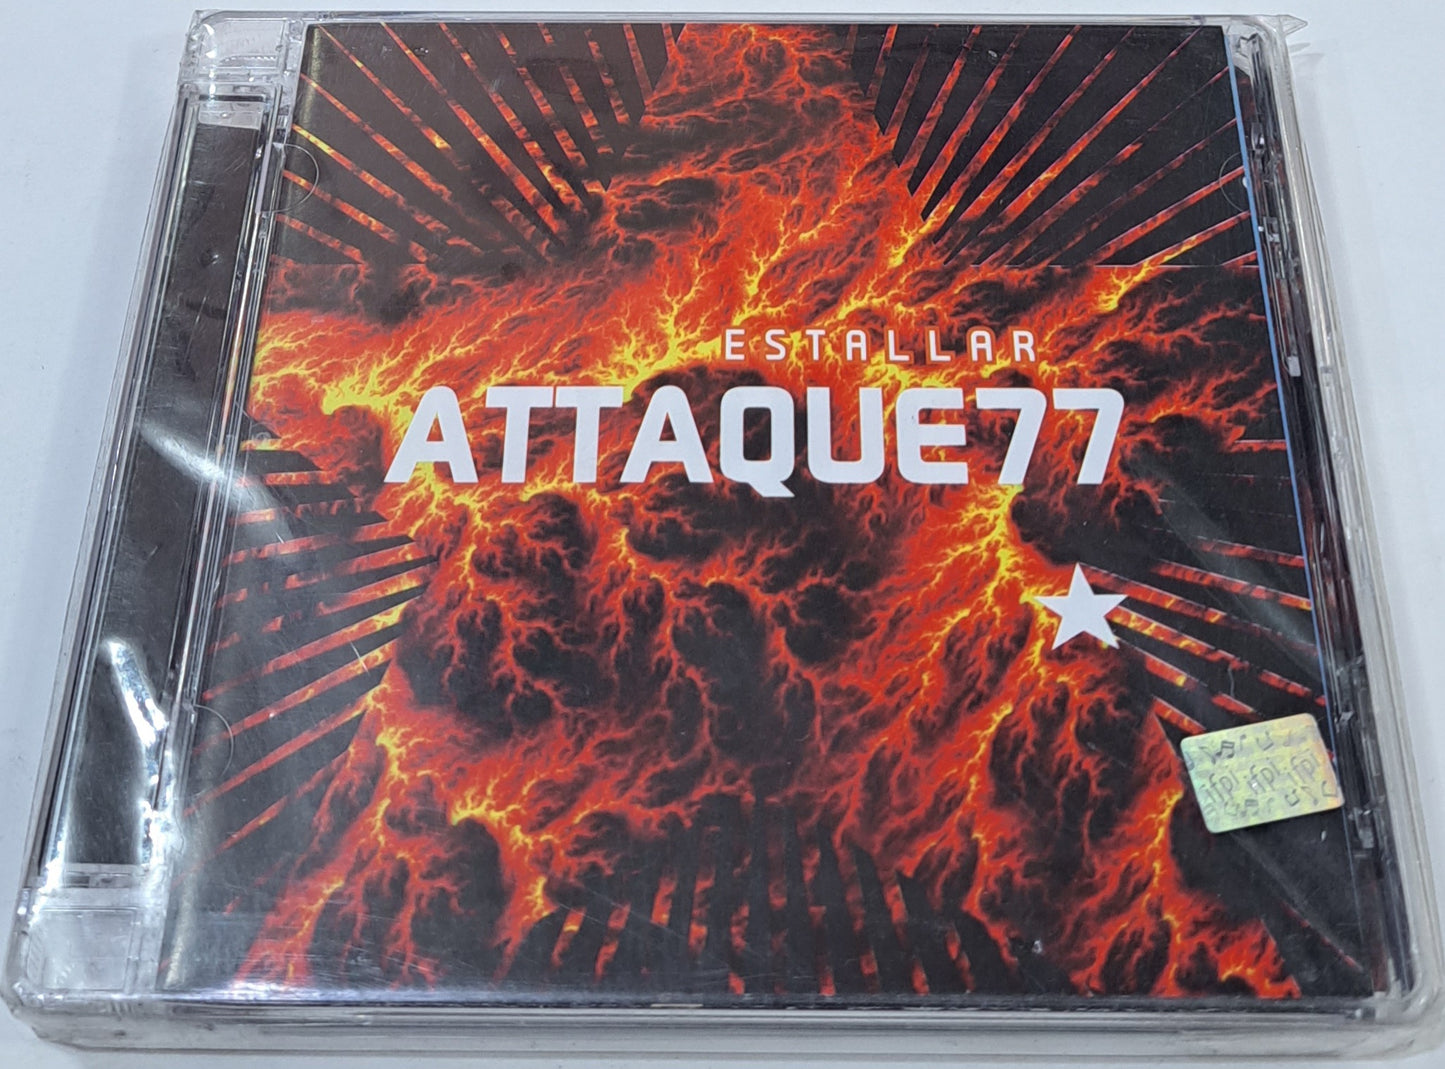 ATTAQUE 77 - ESTALLAR CD